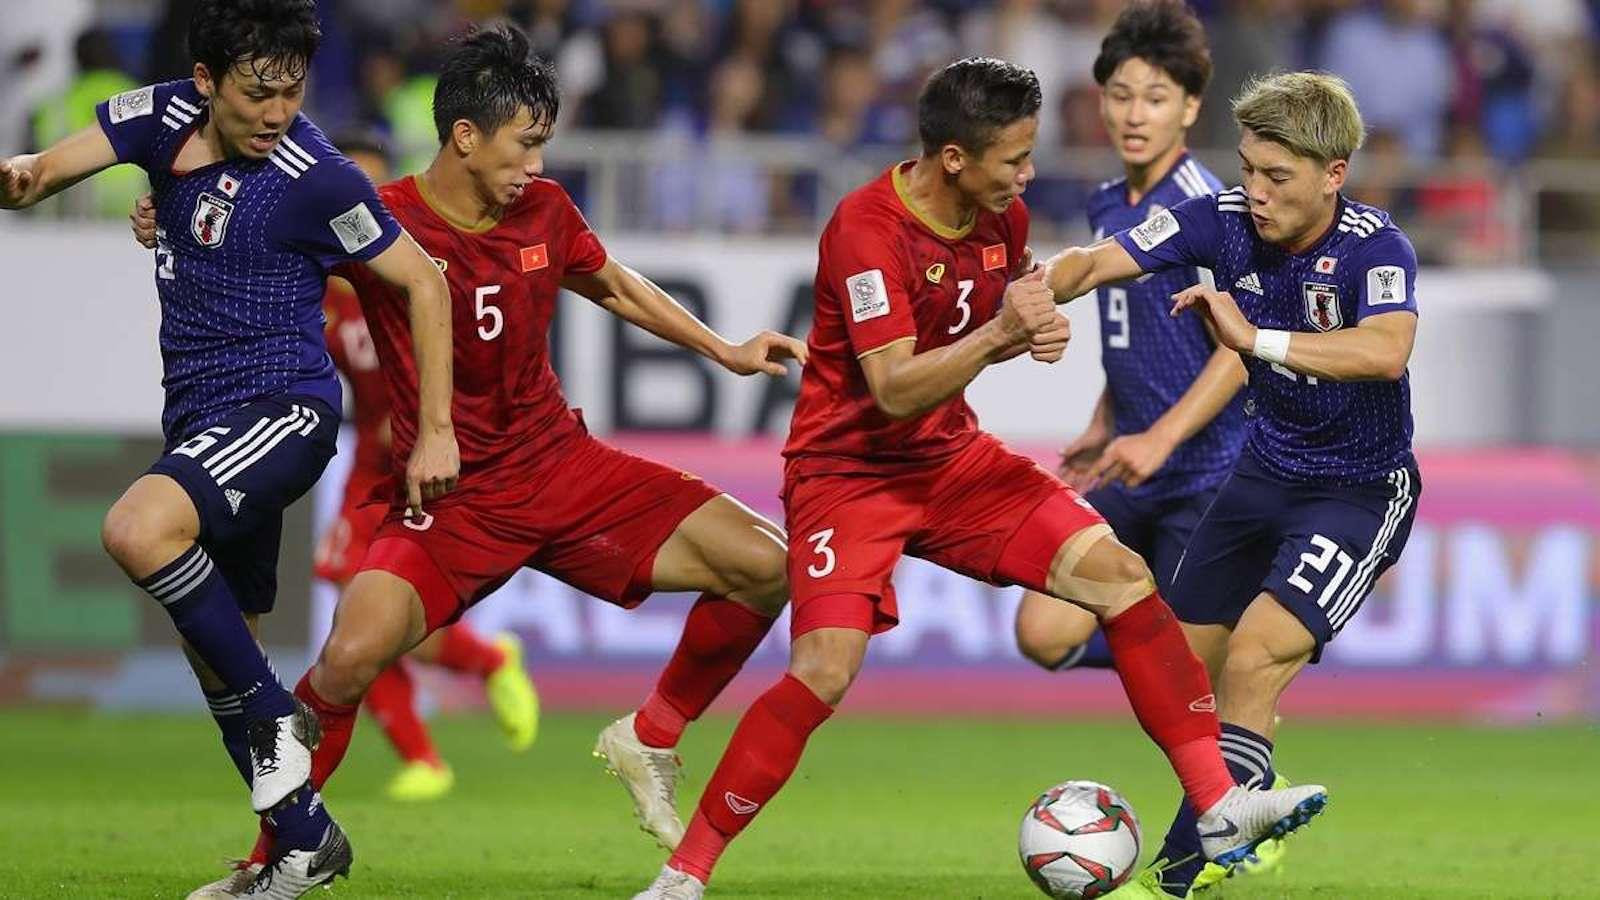 Trực tiếp bóng đá Việt Nam vs Australia vòng loại World Cup 2022 khu vực châu Á - 3